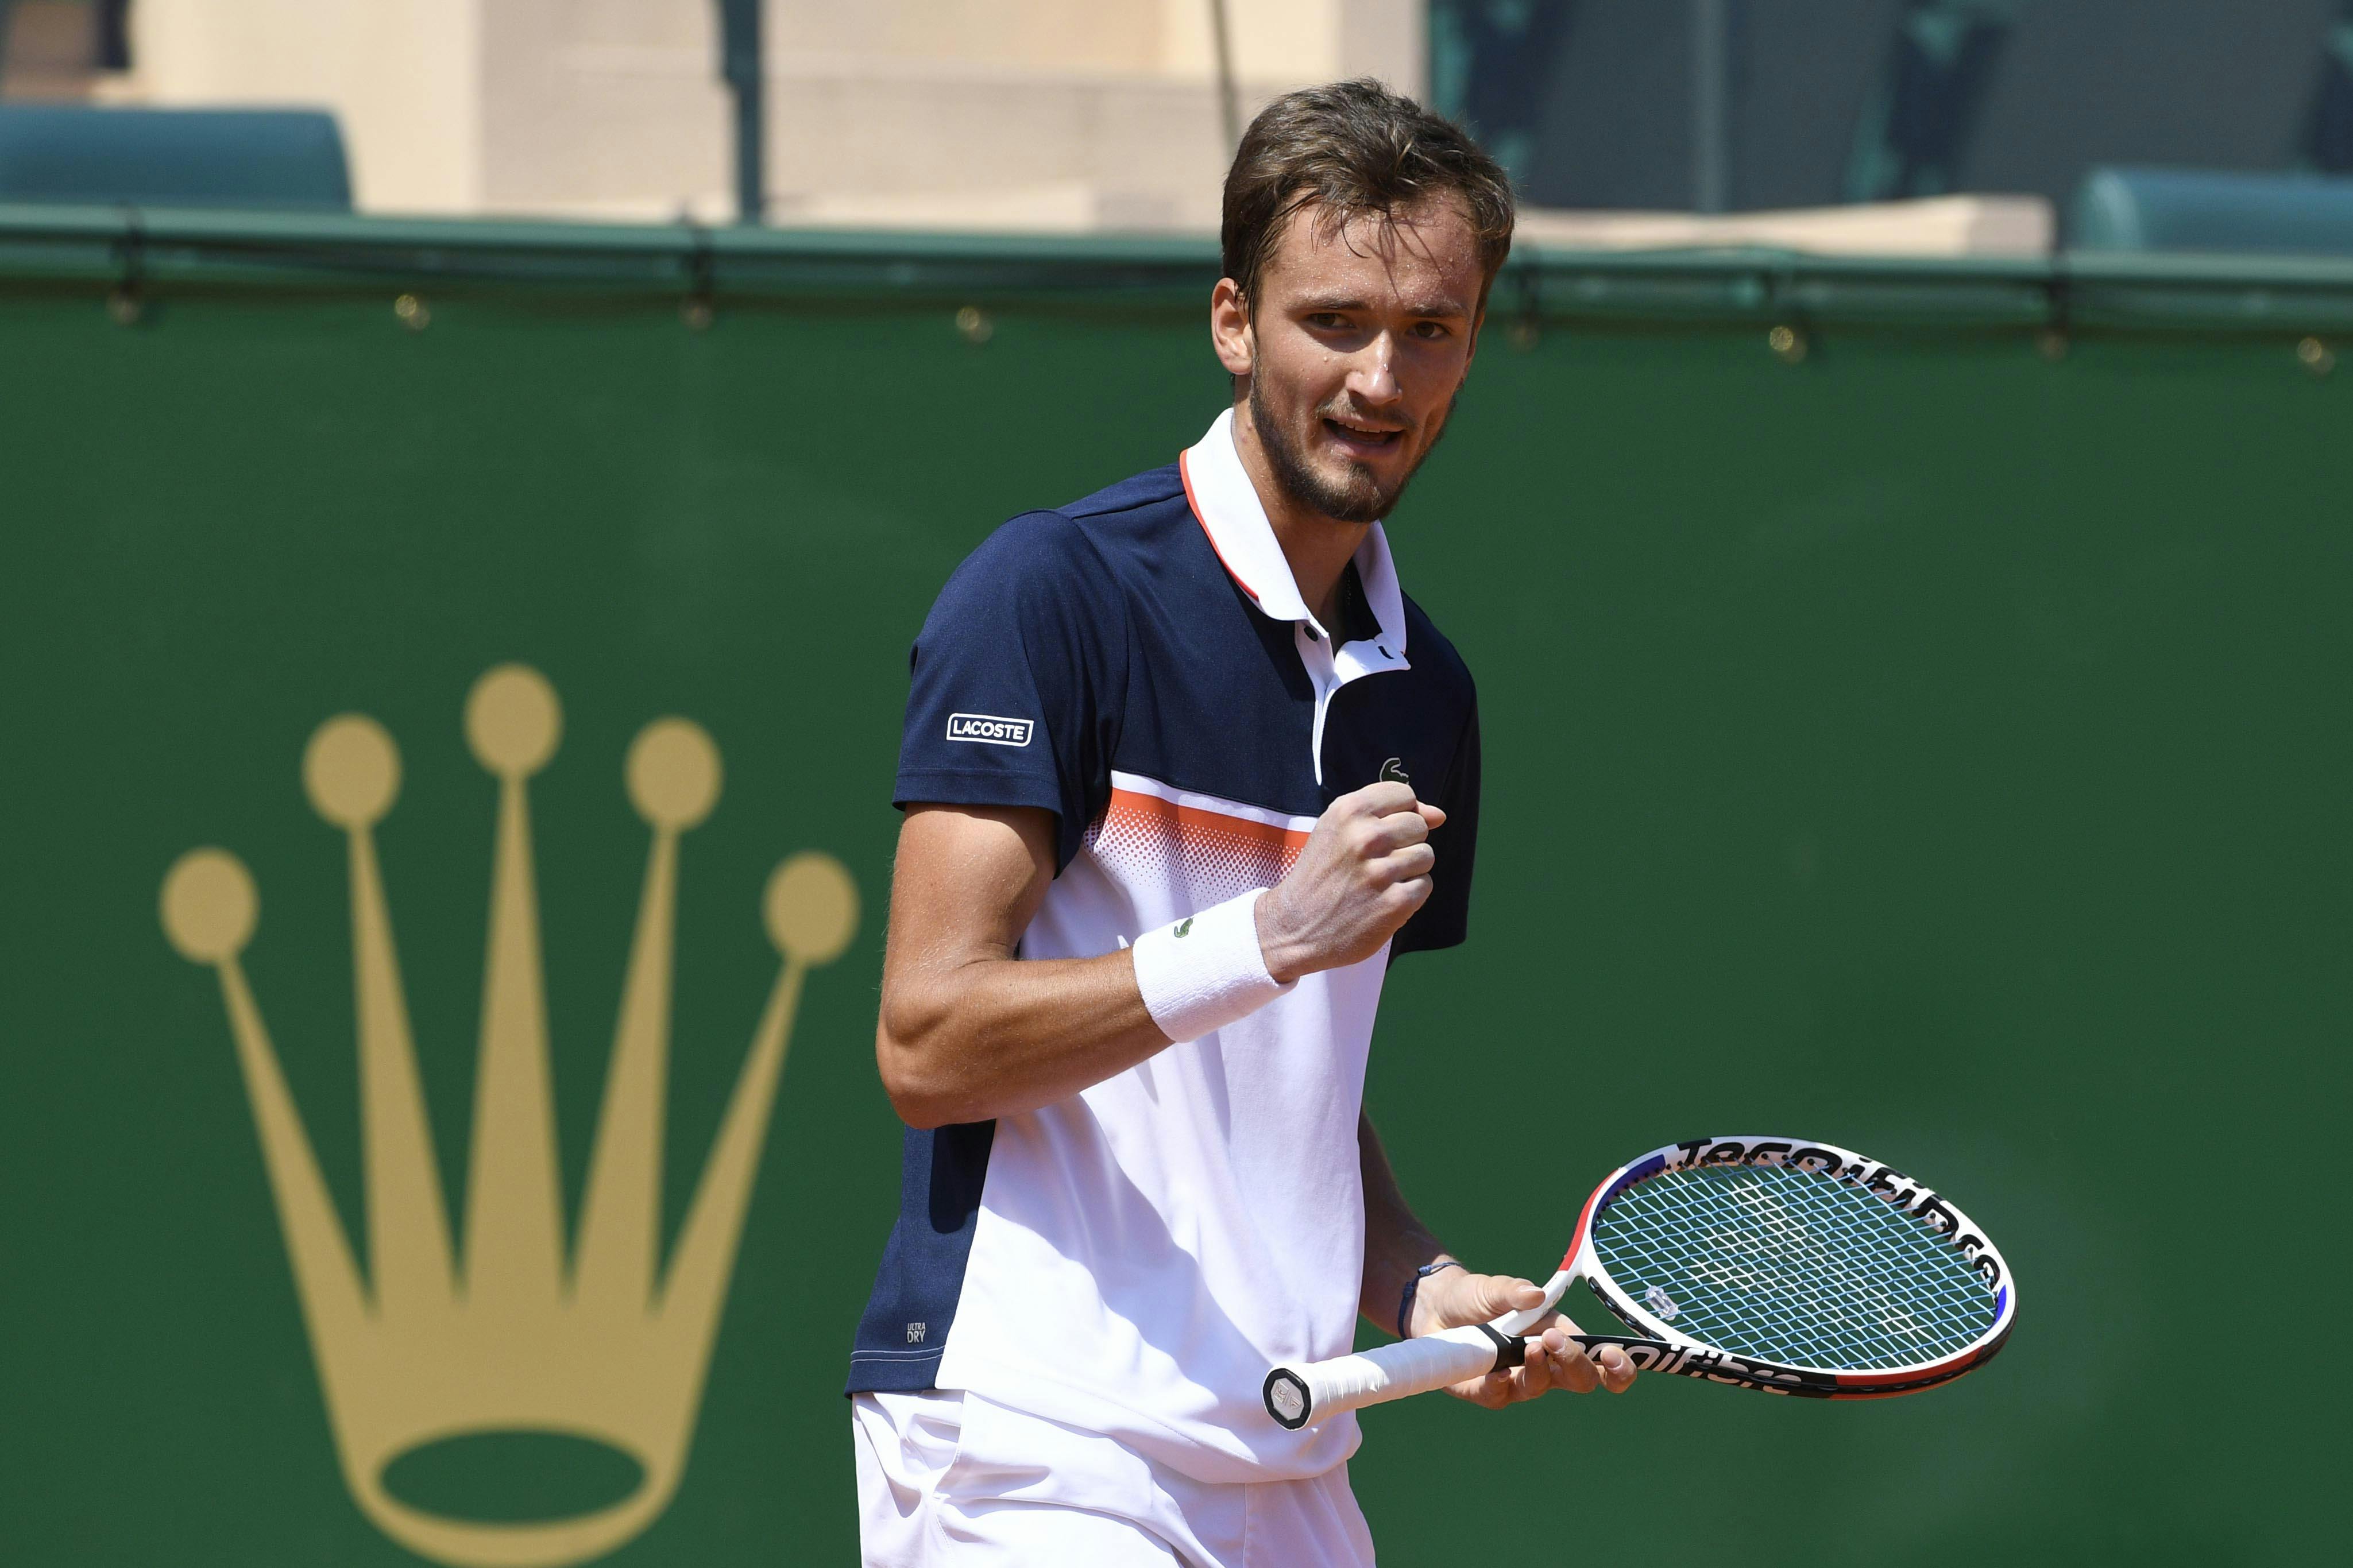 Daniil Medvedev's joy after his win over Novak Djokovic in Monte-Carlo 2019